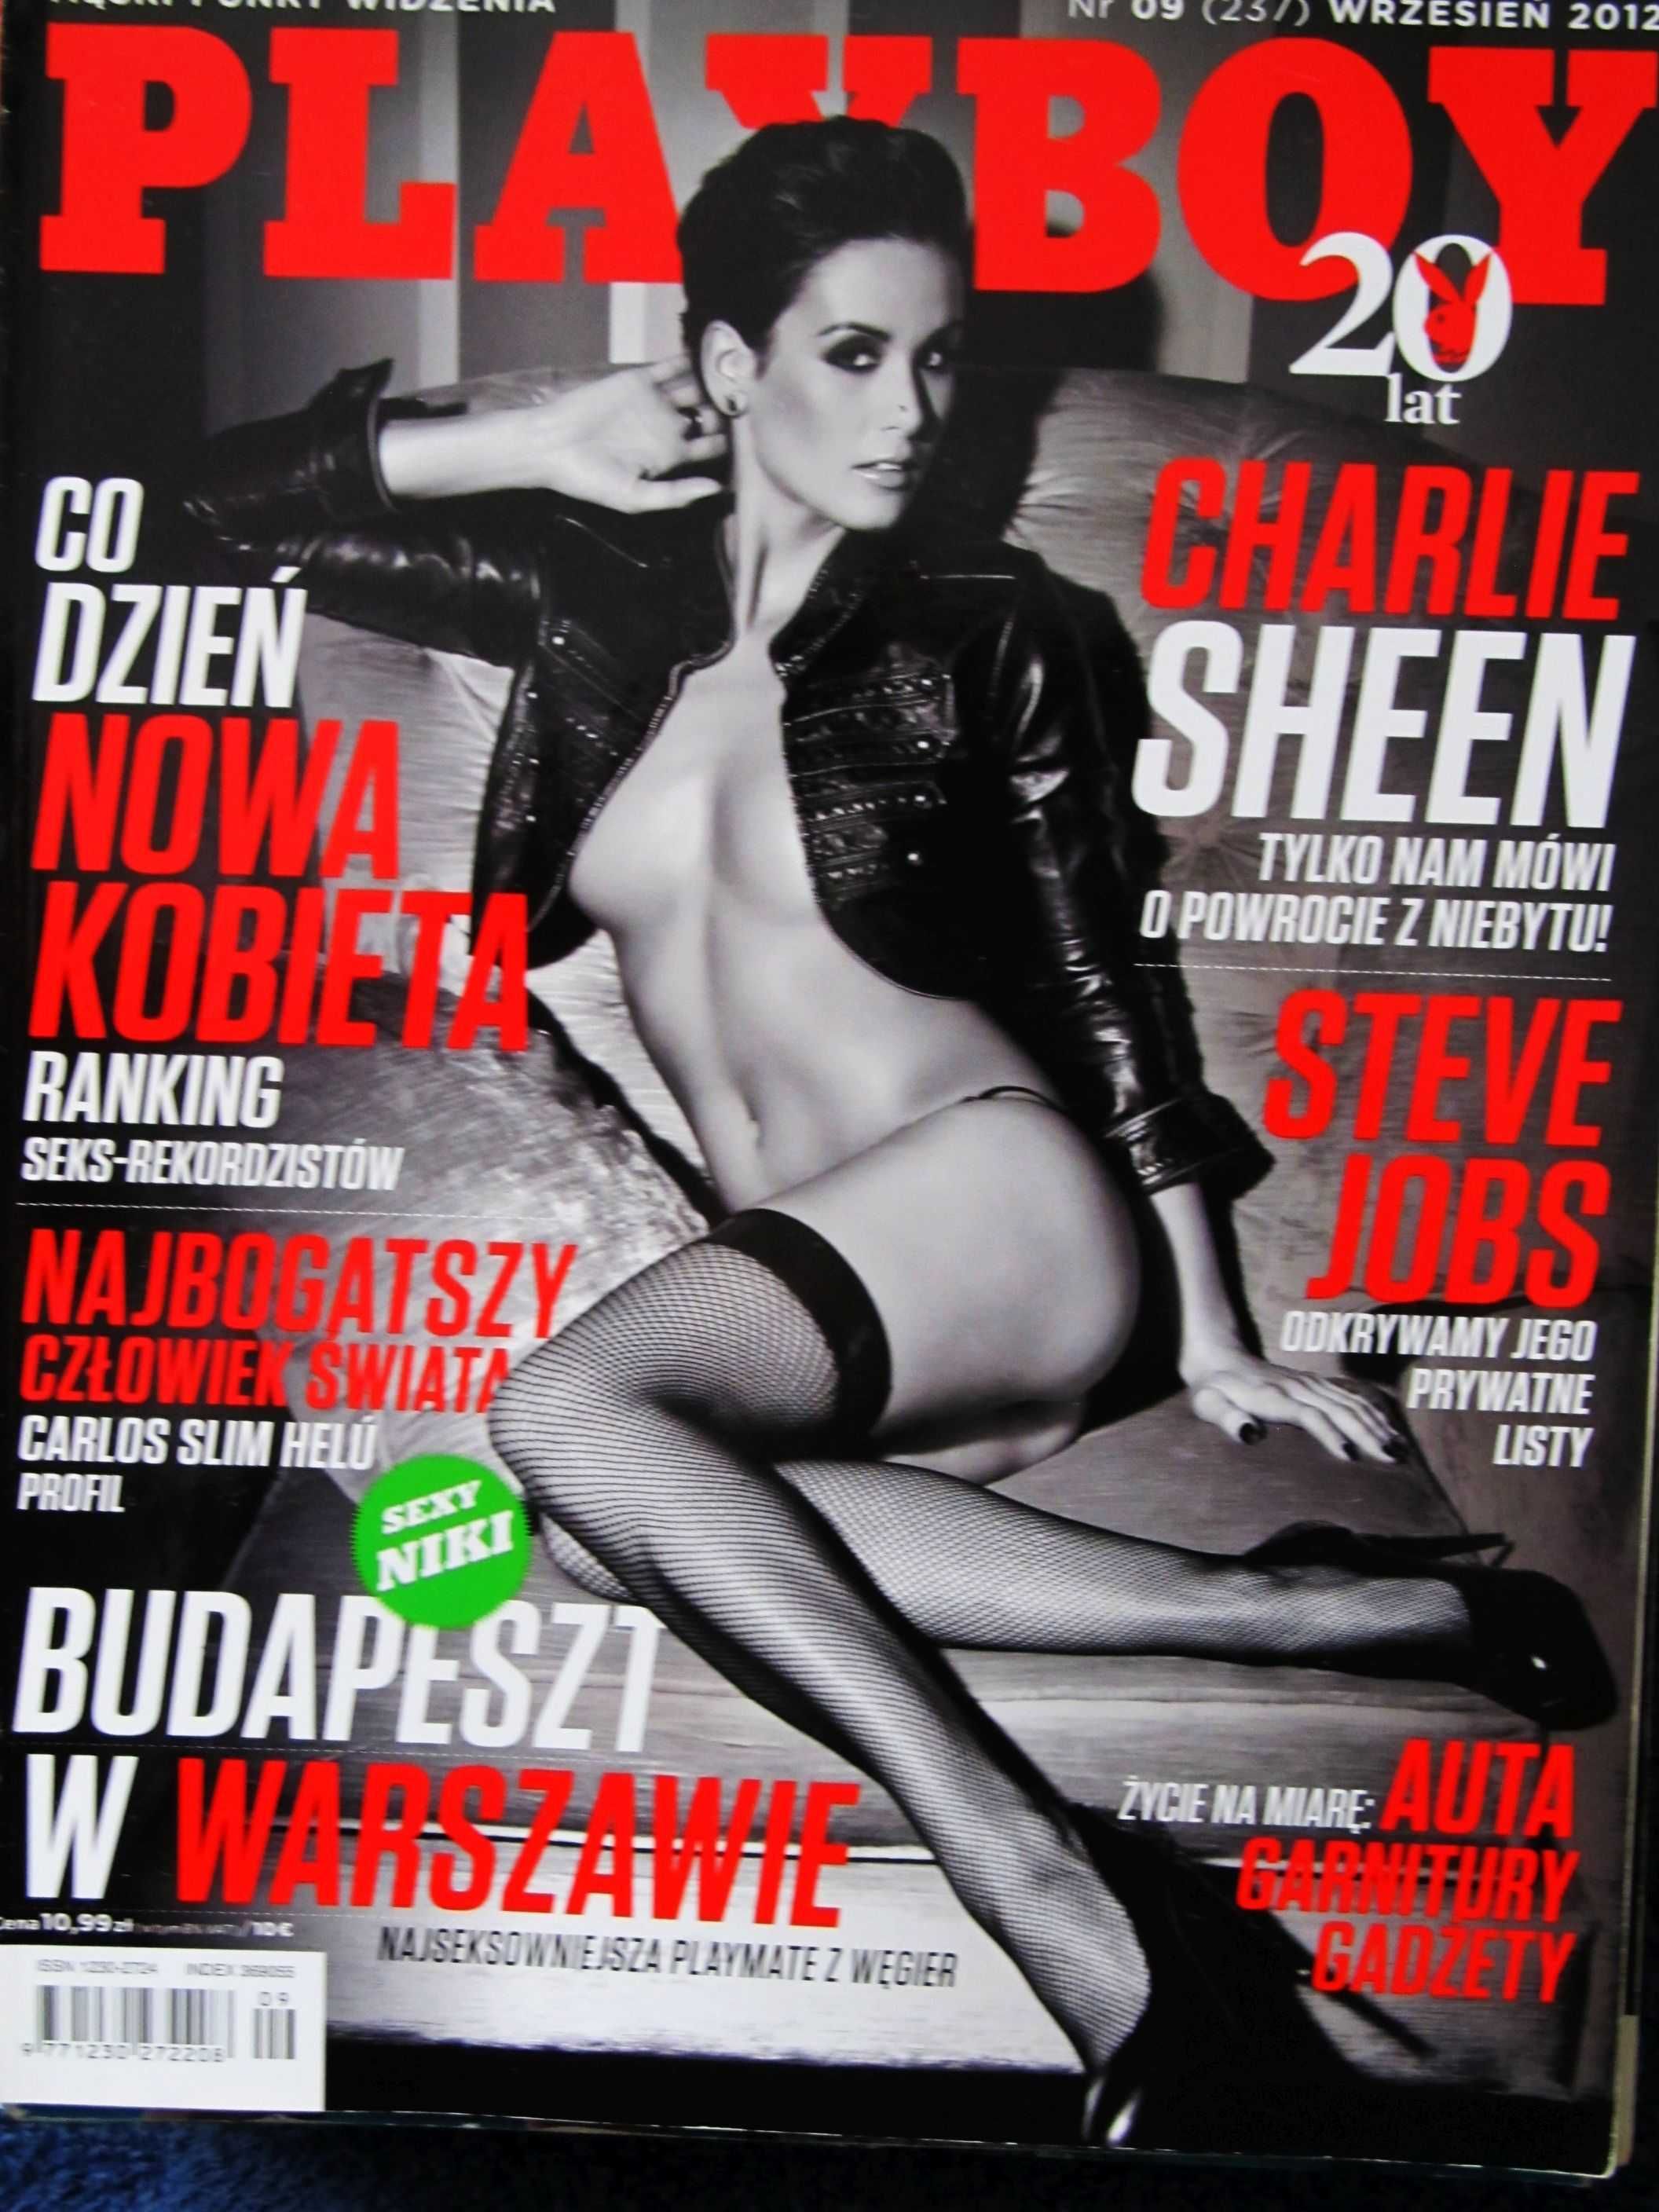 Playboy Nr 09 Wrzesień 2012  front Niki Daniludisz